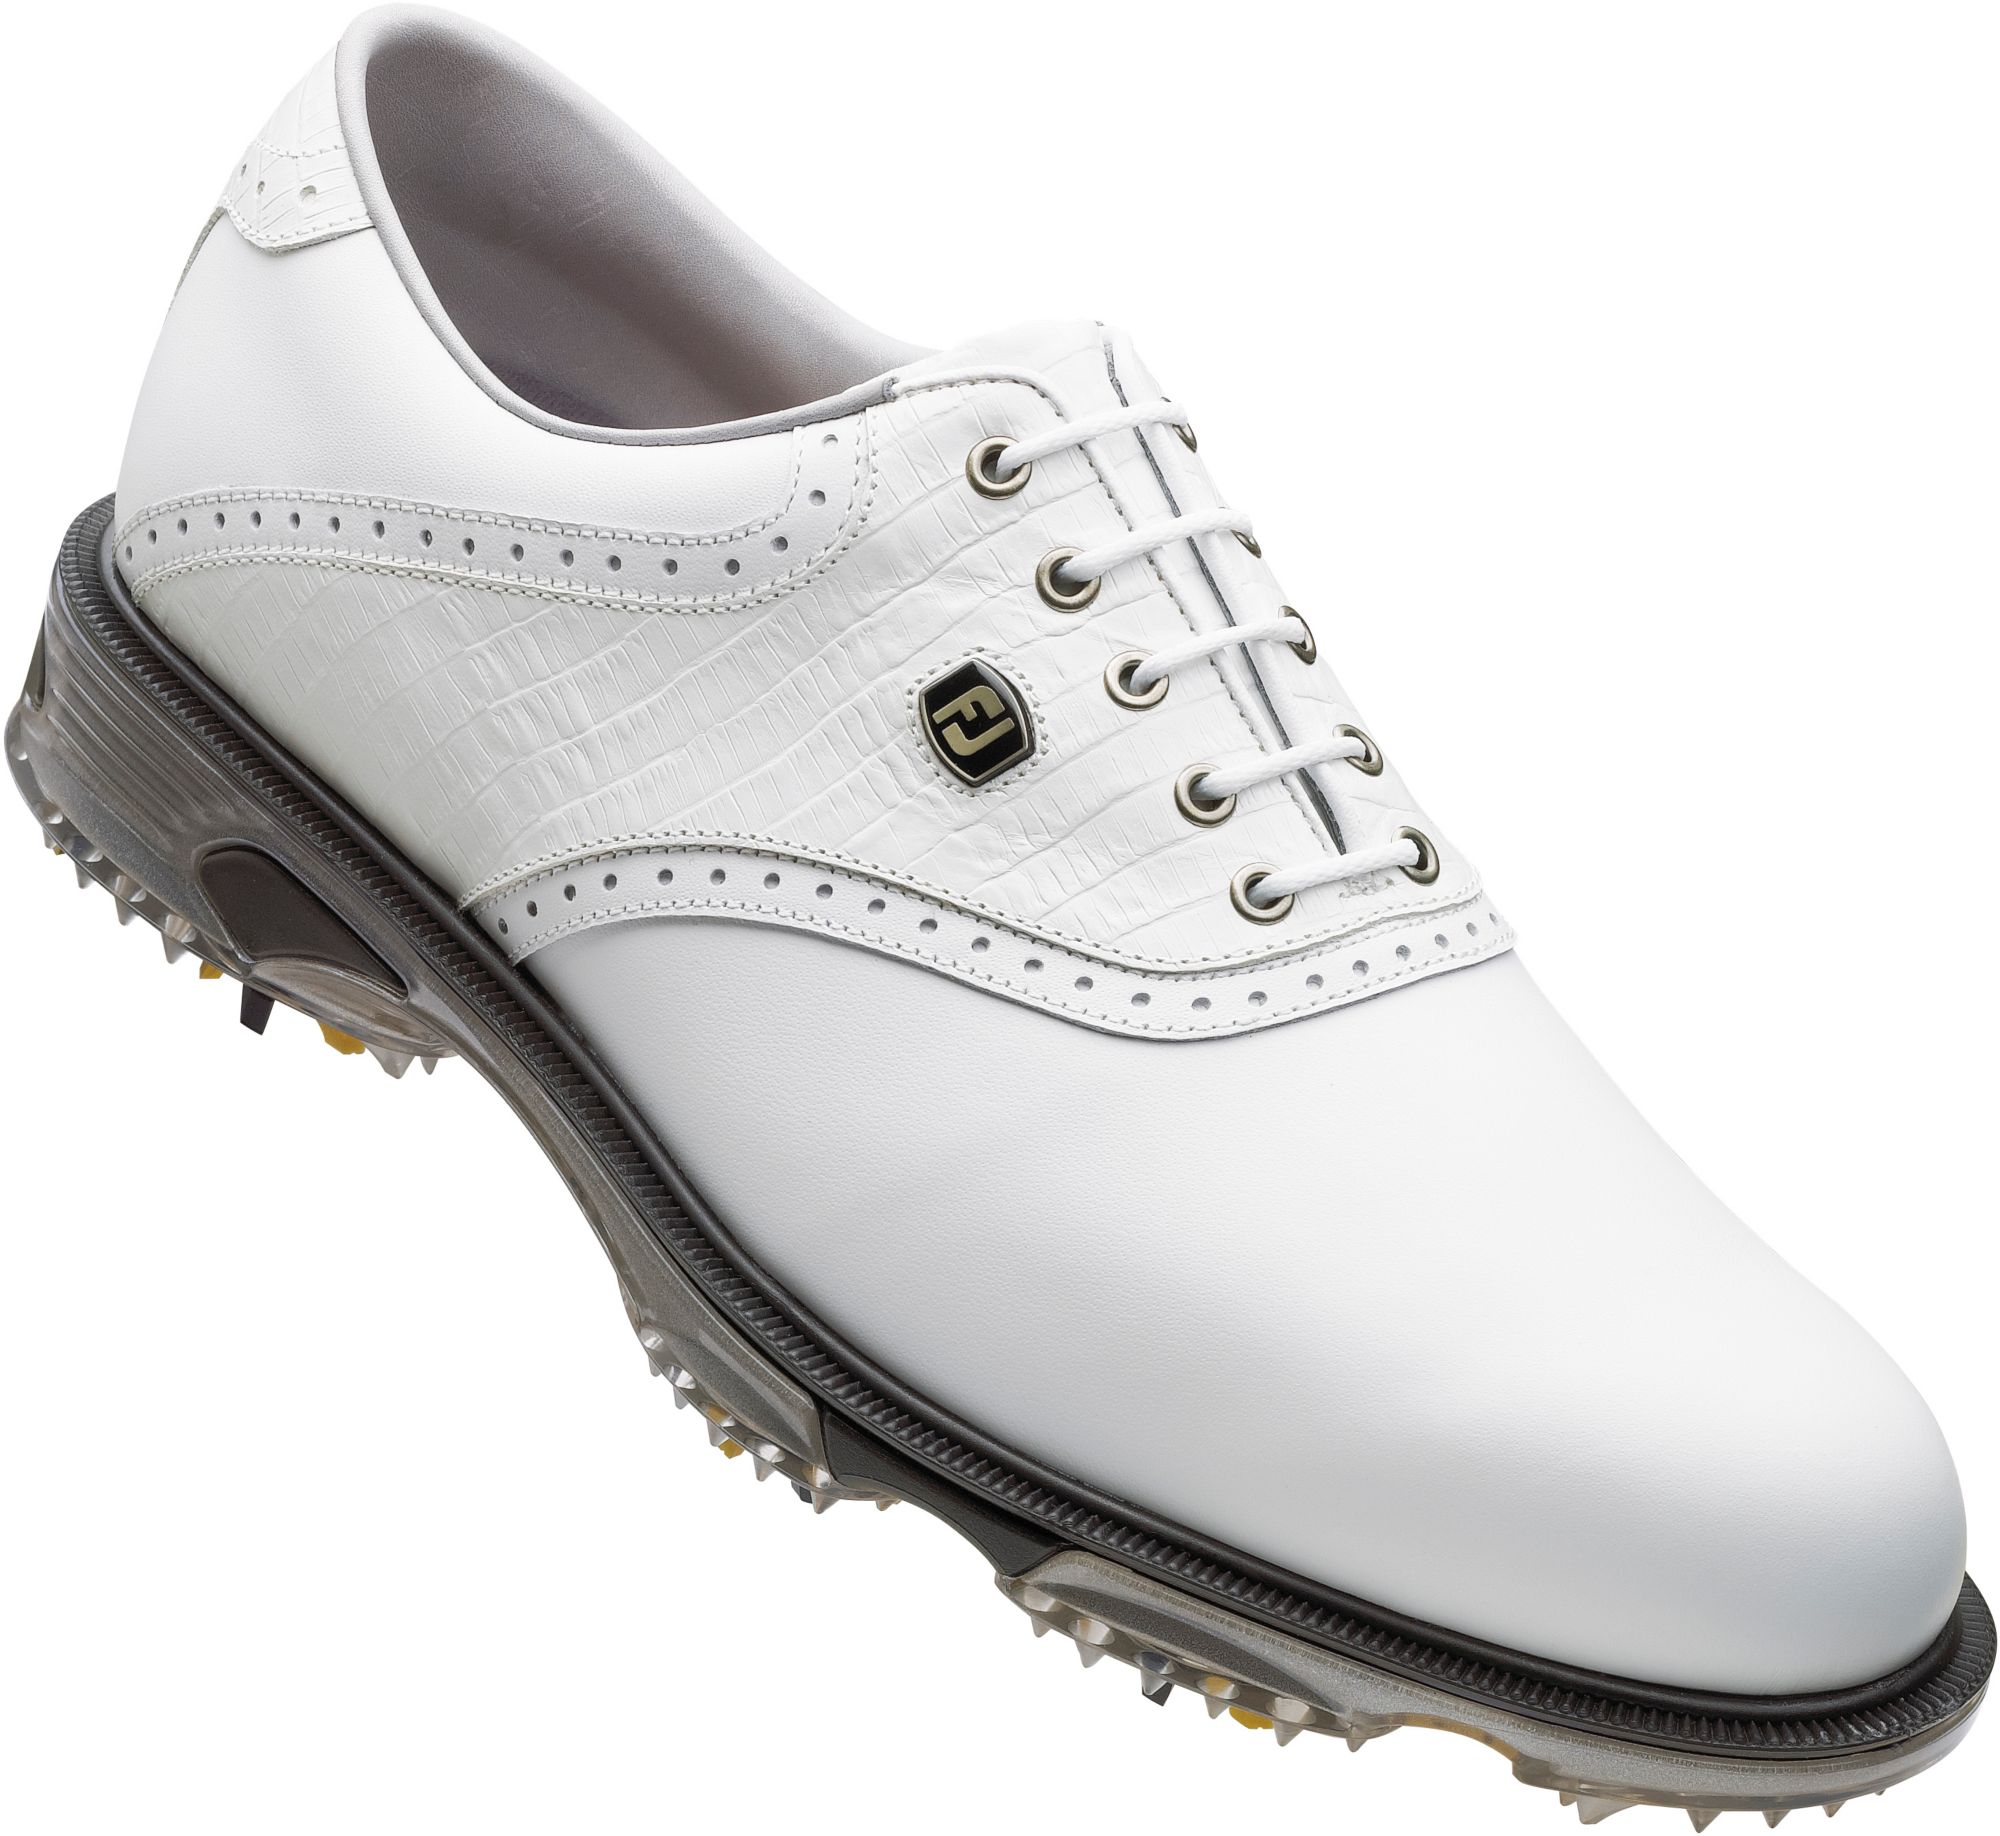 Footjoy Men’s Dryjoys Tour Golf Shoe – White Smooth/white Lizard Print ...